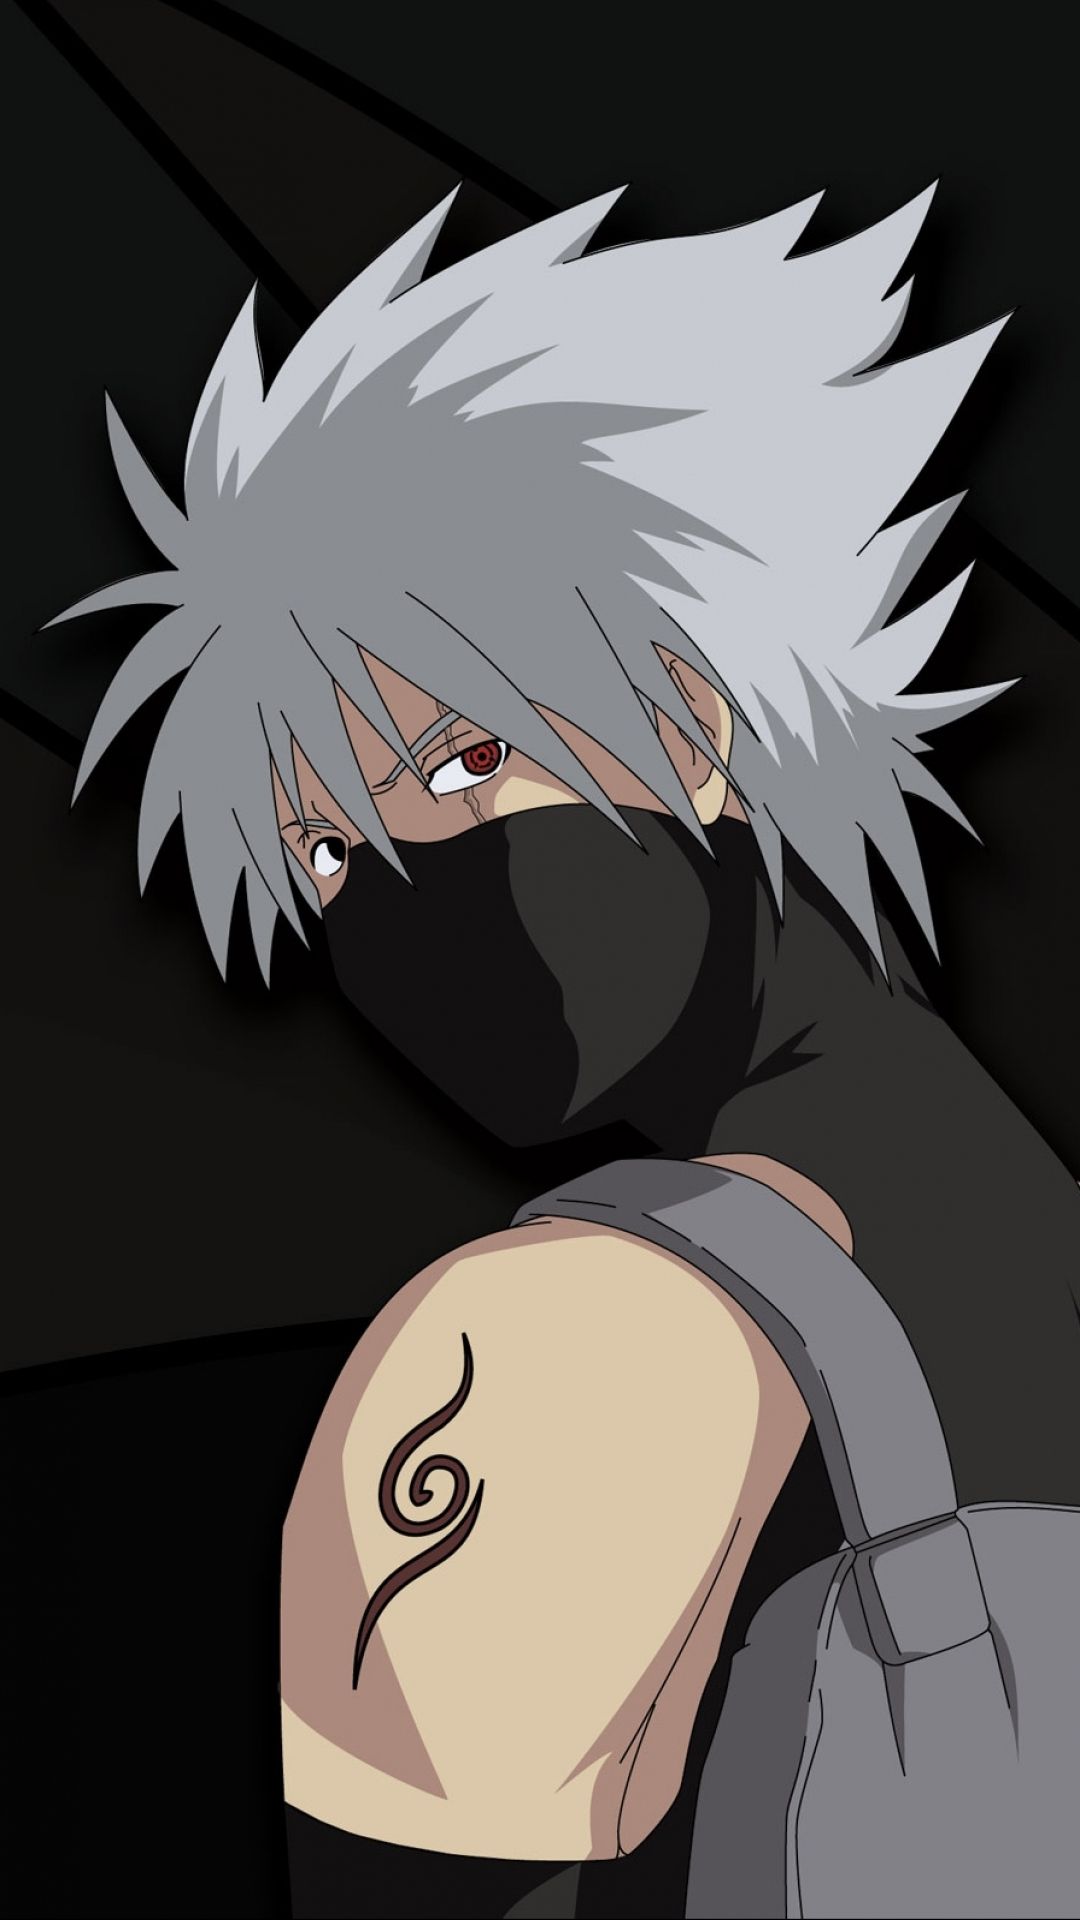 Anbu Kakashi: Khám phá thế giới của Anbu Kakashi, một trong những nhân vật được yêu thích nhất trong Naruto. Xem anh ta lần theo lời hướng dẫn của Hokage và sử dụng kỹ năng chiến đấu của mình để bảo vệ Làng Lá khỏi những kẻ thù đông đảo.